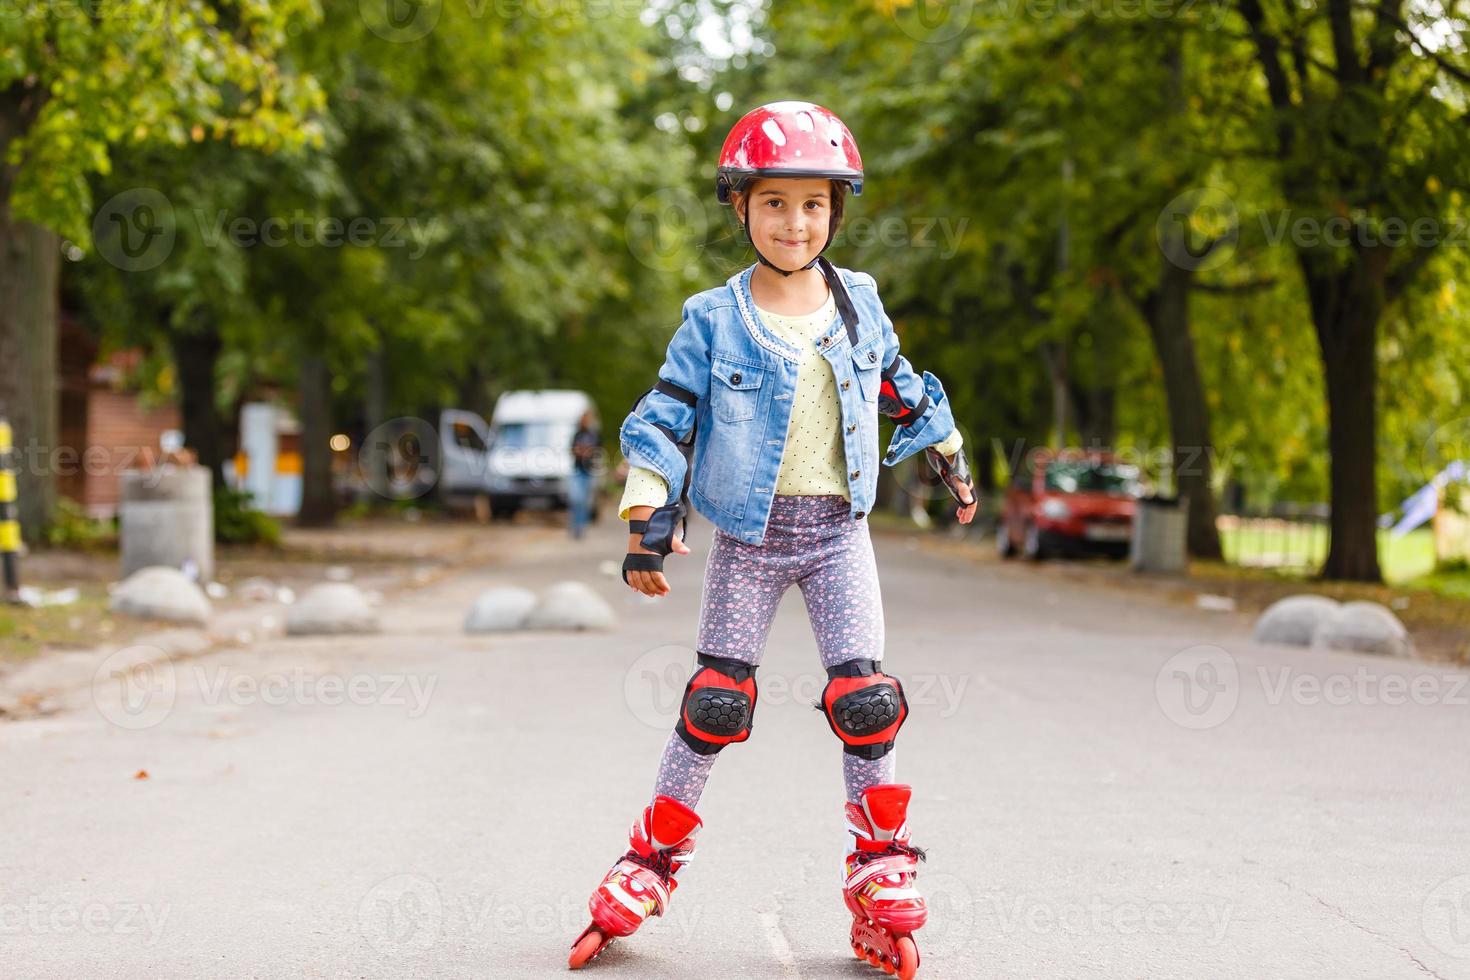 niña bonita y graciosa en patines con casco montando en un parque